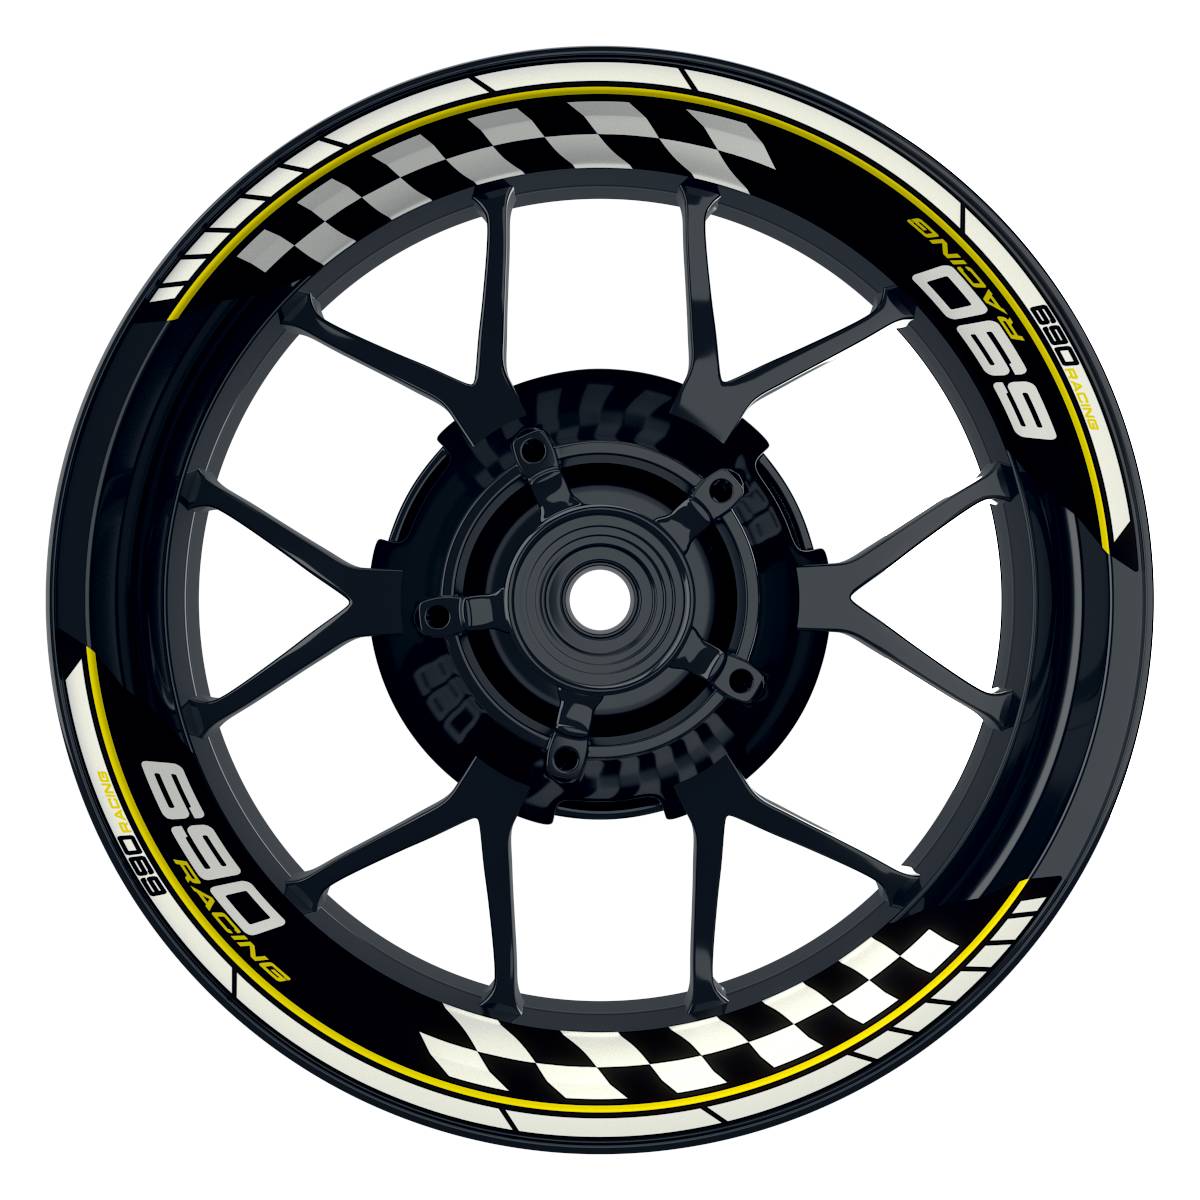 KTM Racing 690 Grid schwarz gelb Frontansicht